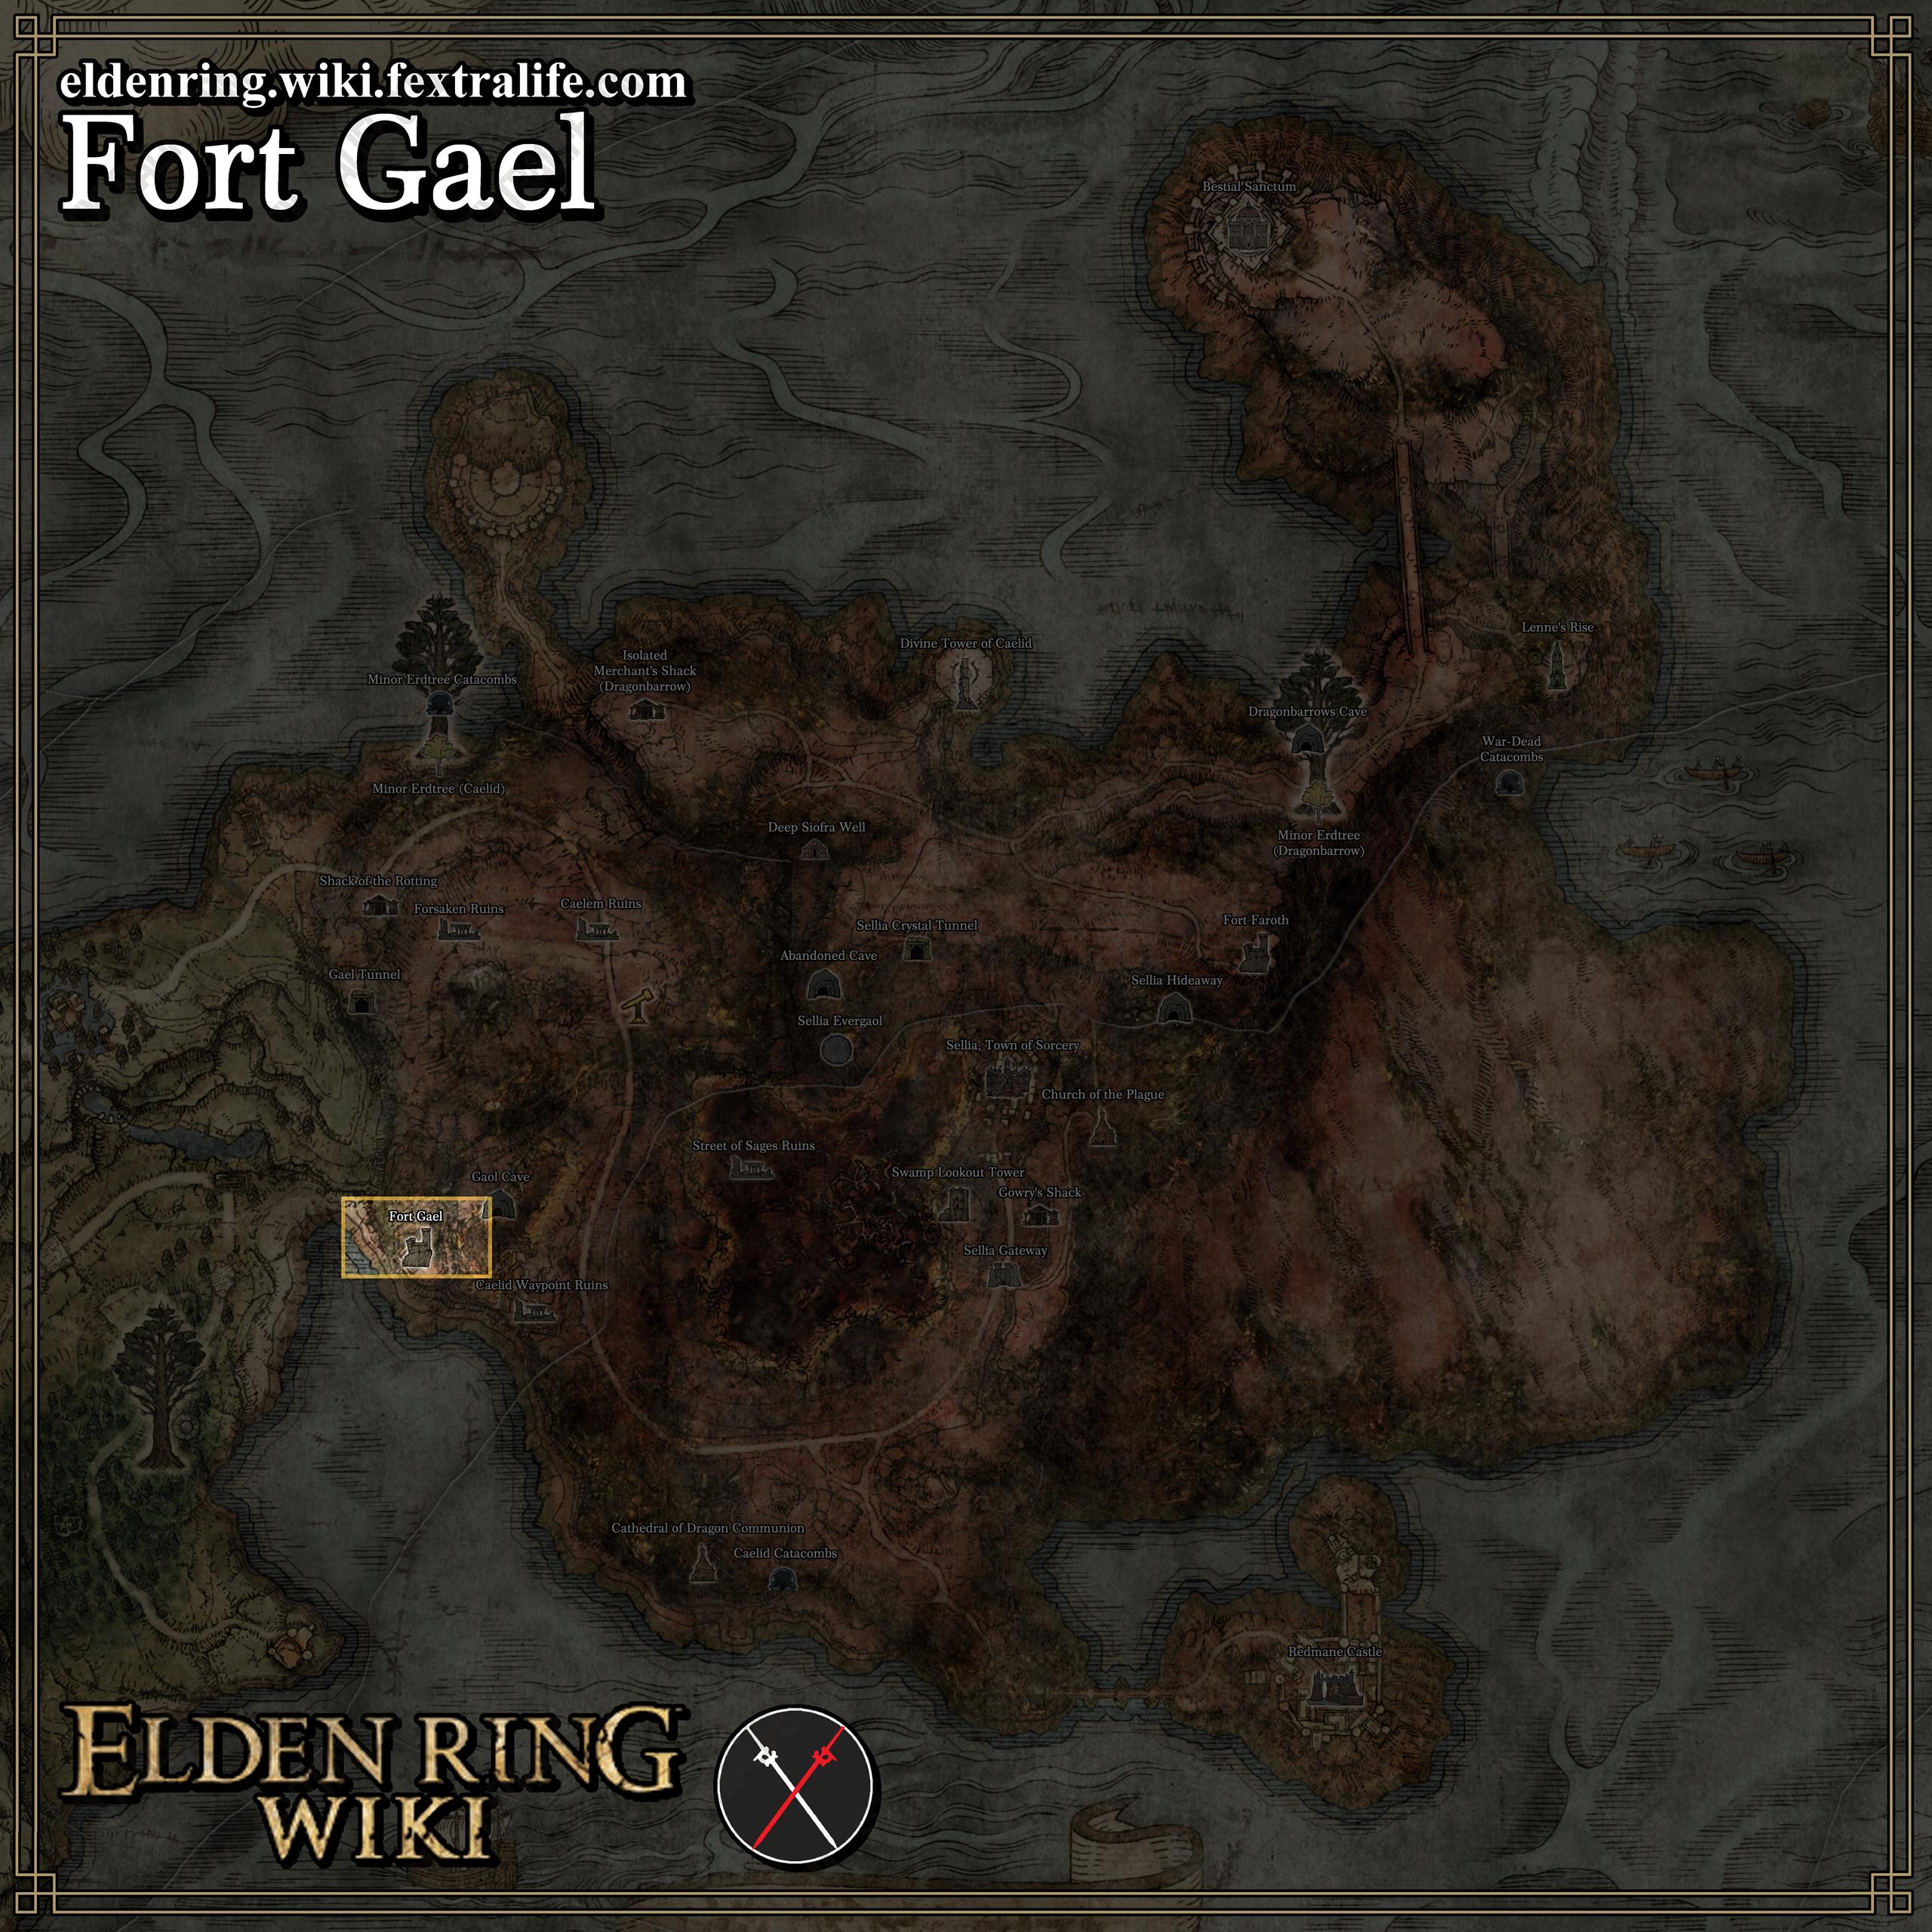 Elden Ring: Fort Faroth Walkthrough